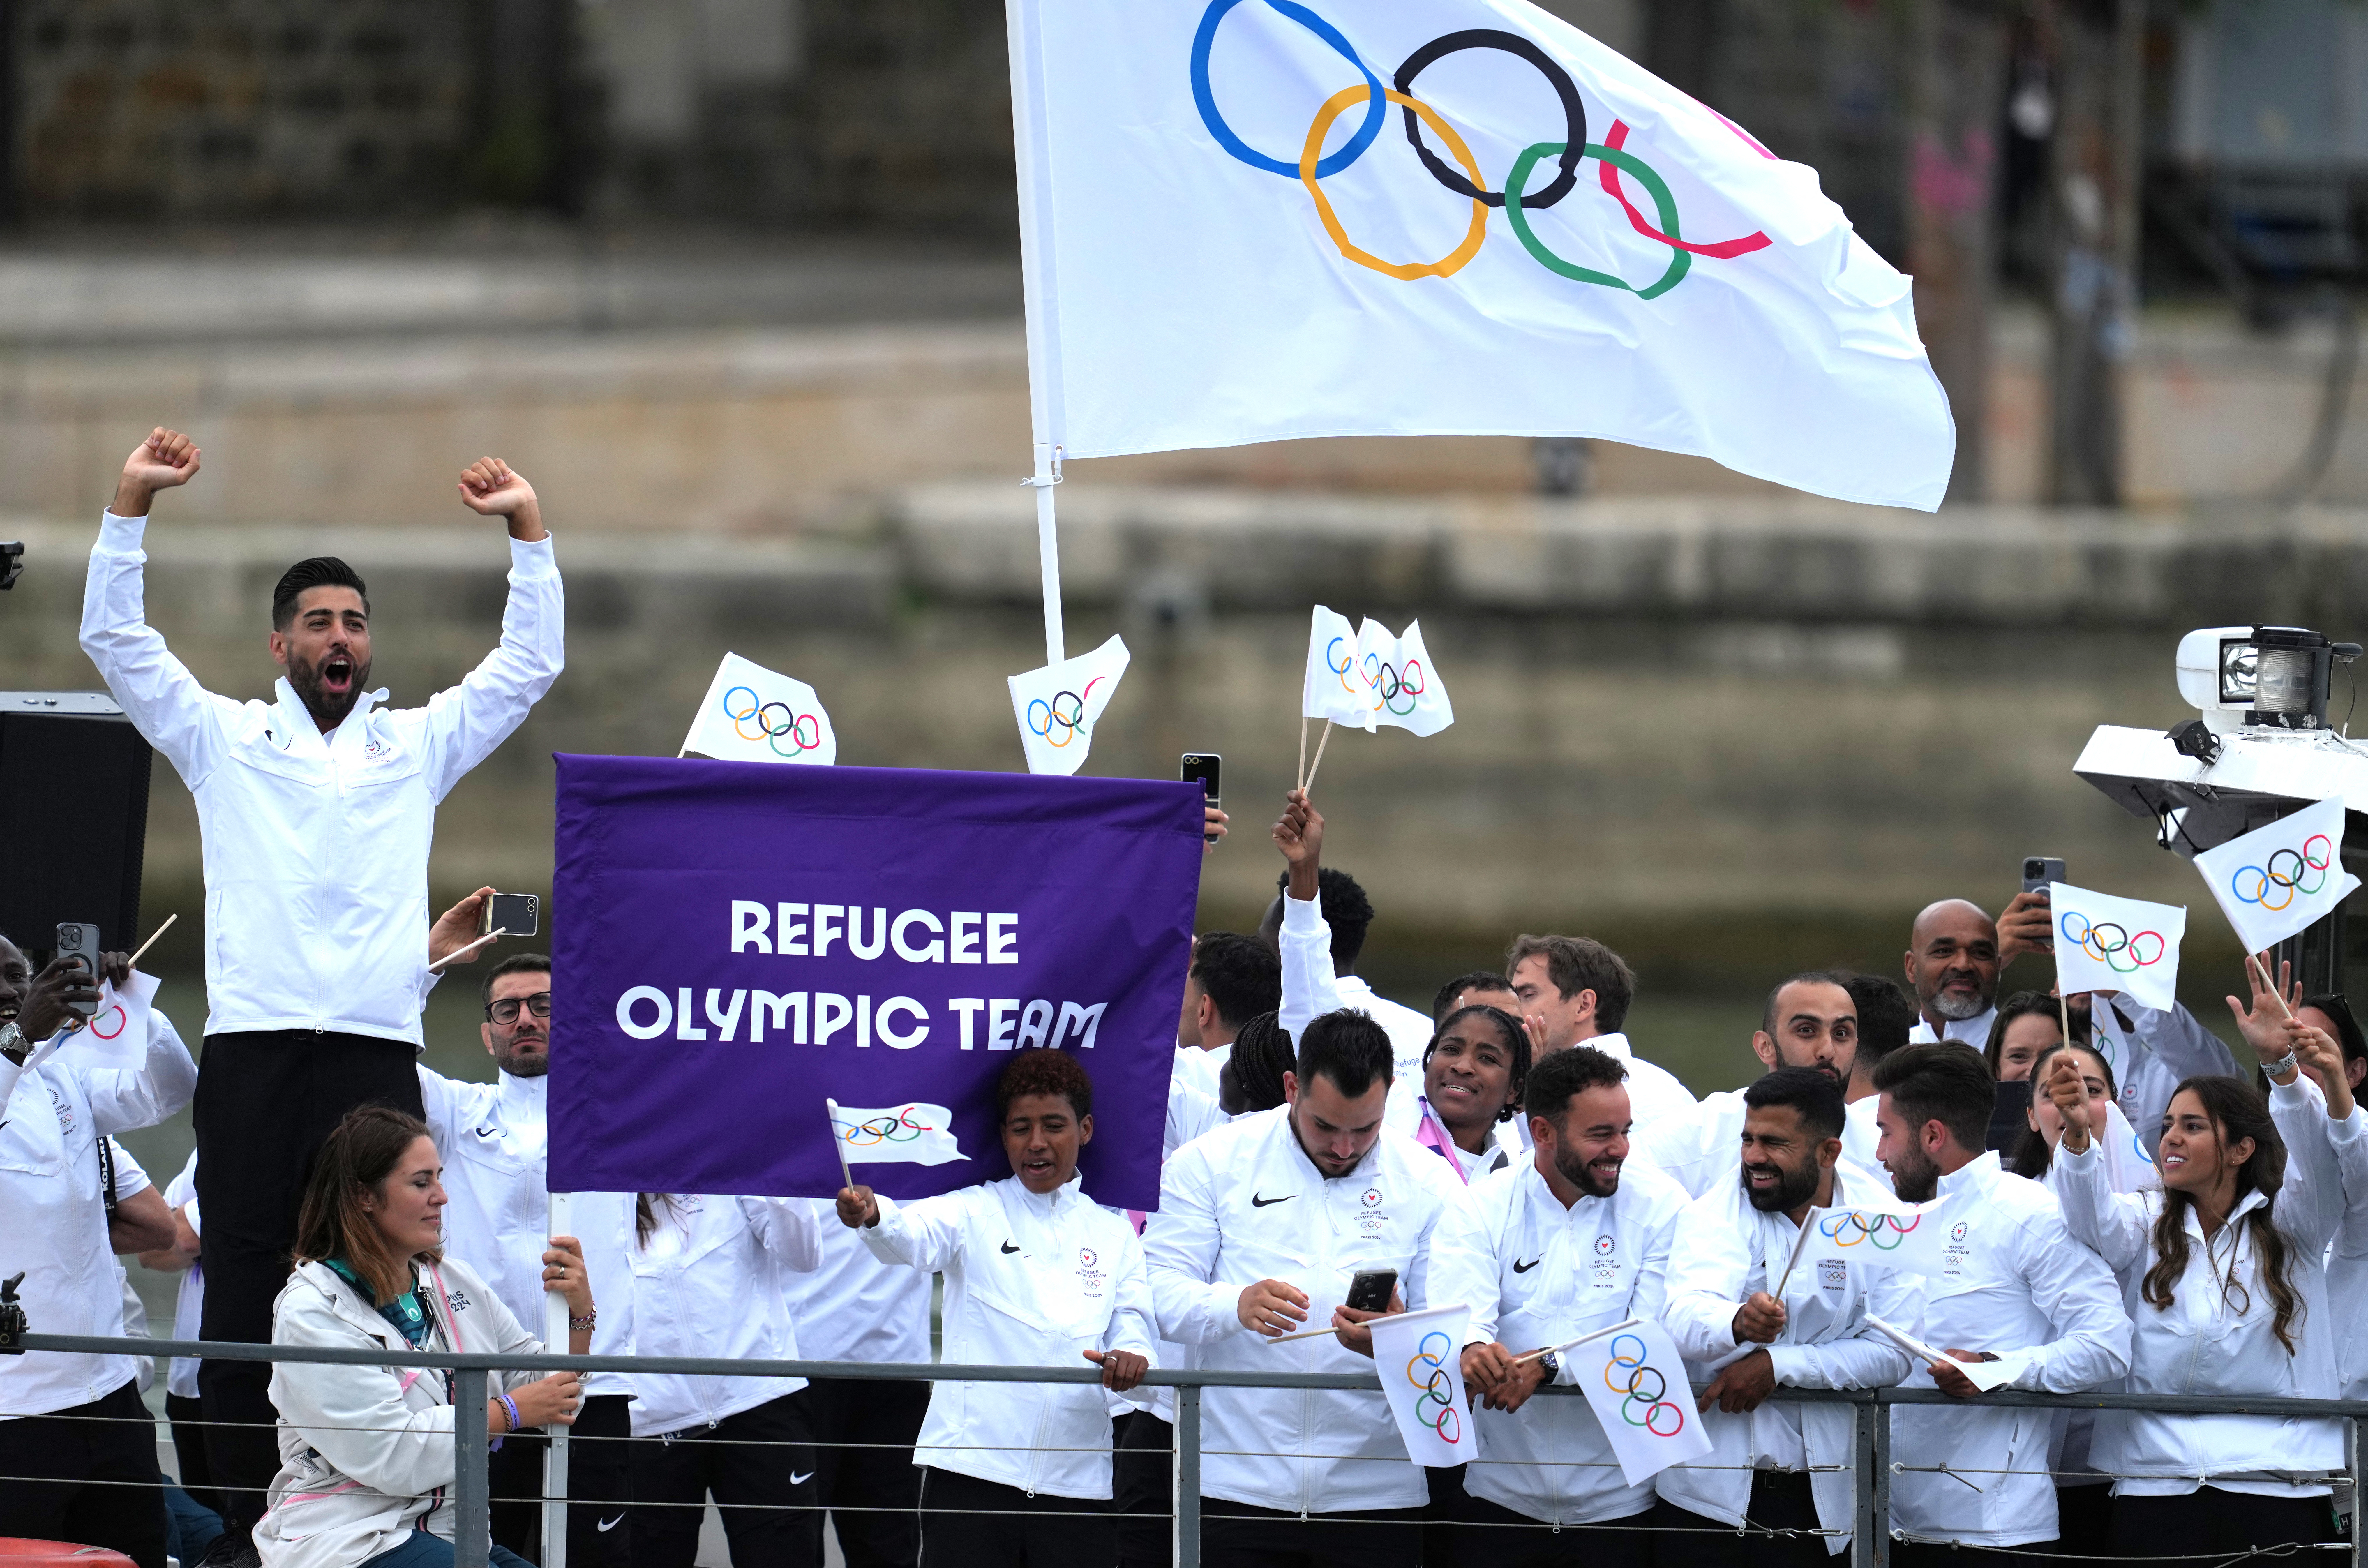 Τελετή έναρξης Ολυμπιακών Αγώνων: Η συγκινητική στιγμή της εισόδου της ομάδας των προσφύγων